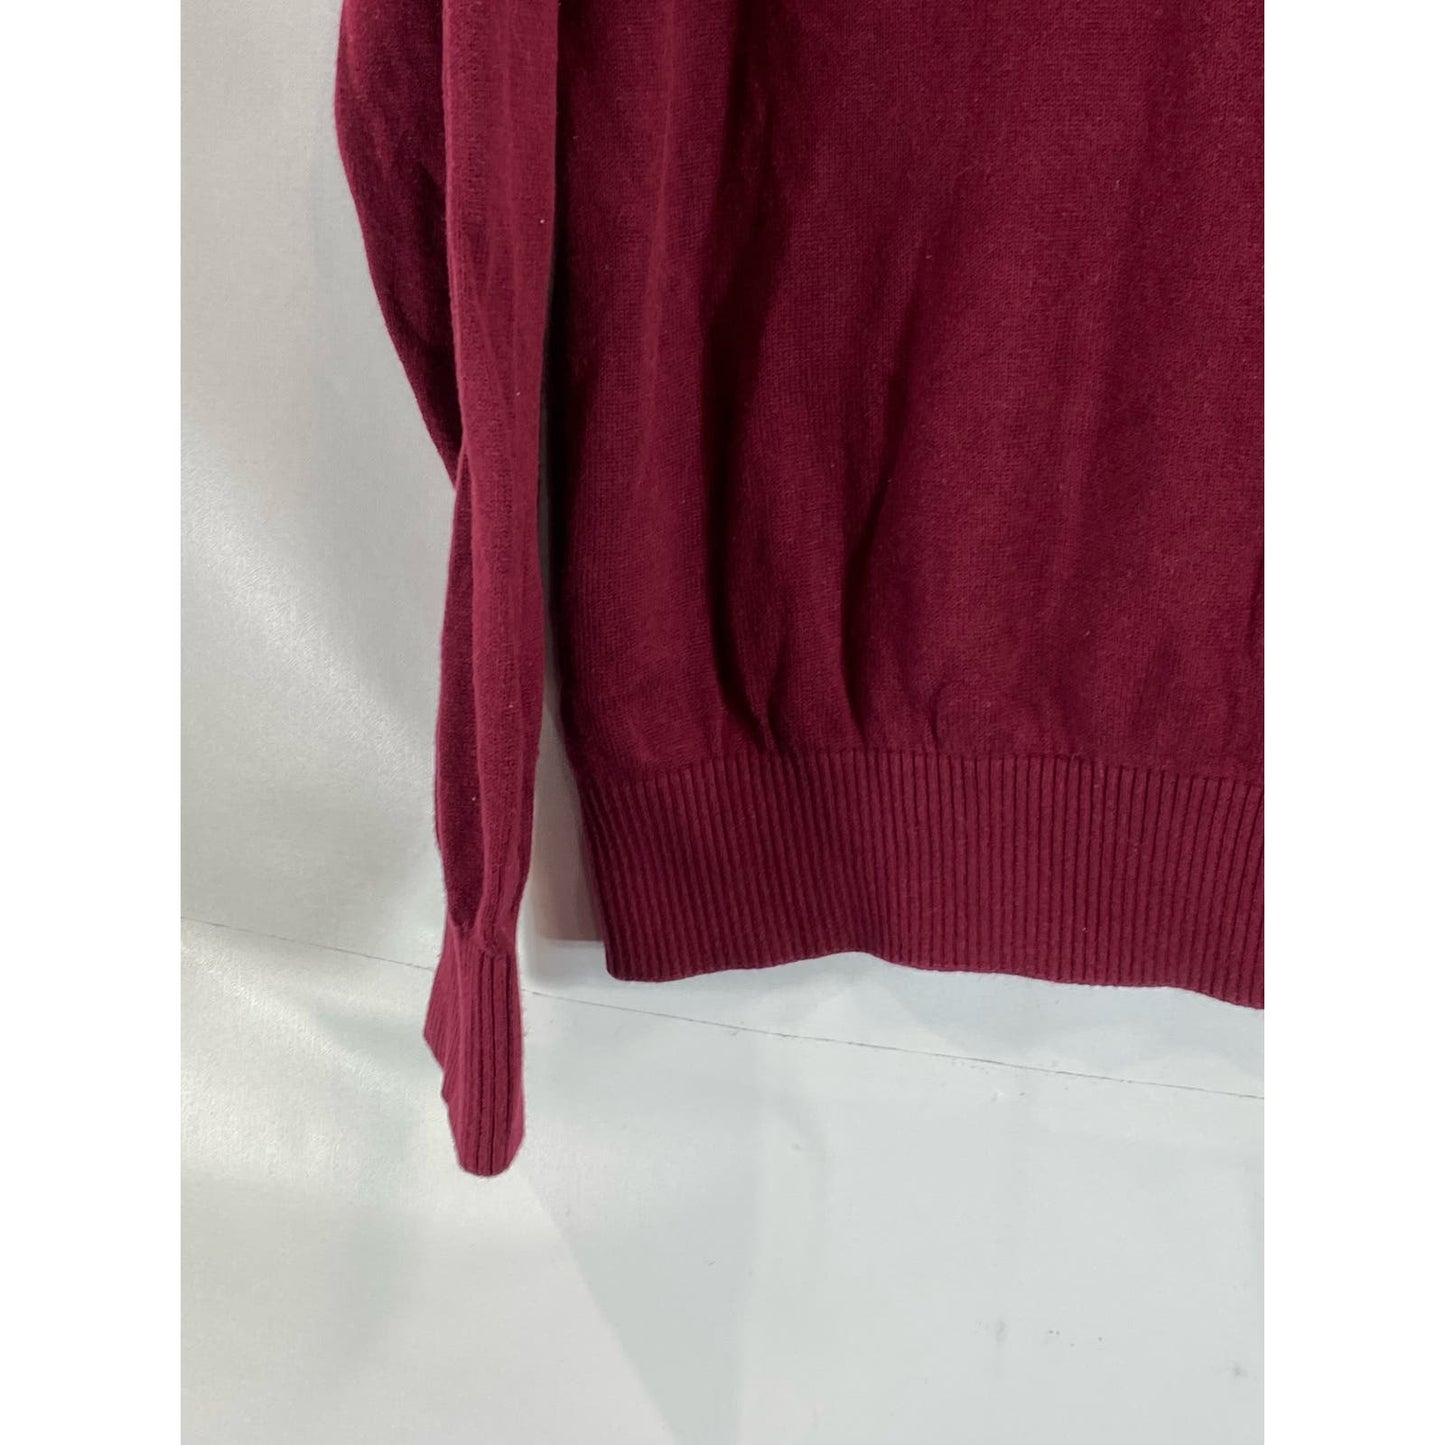 TOMMY HILFIGER Men's Sonoma Red V-Neck Pullover Sweater SZ L